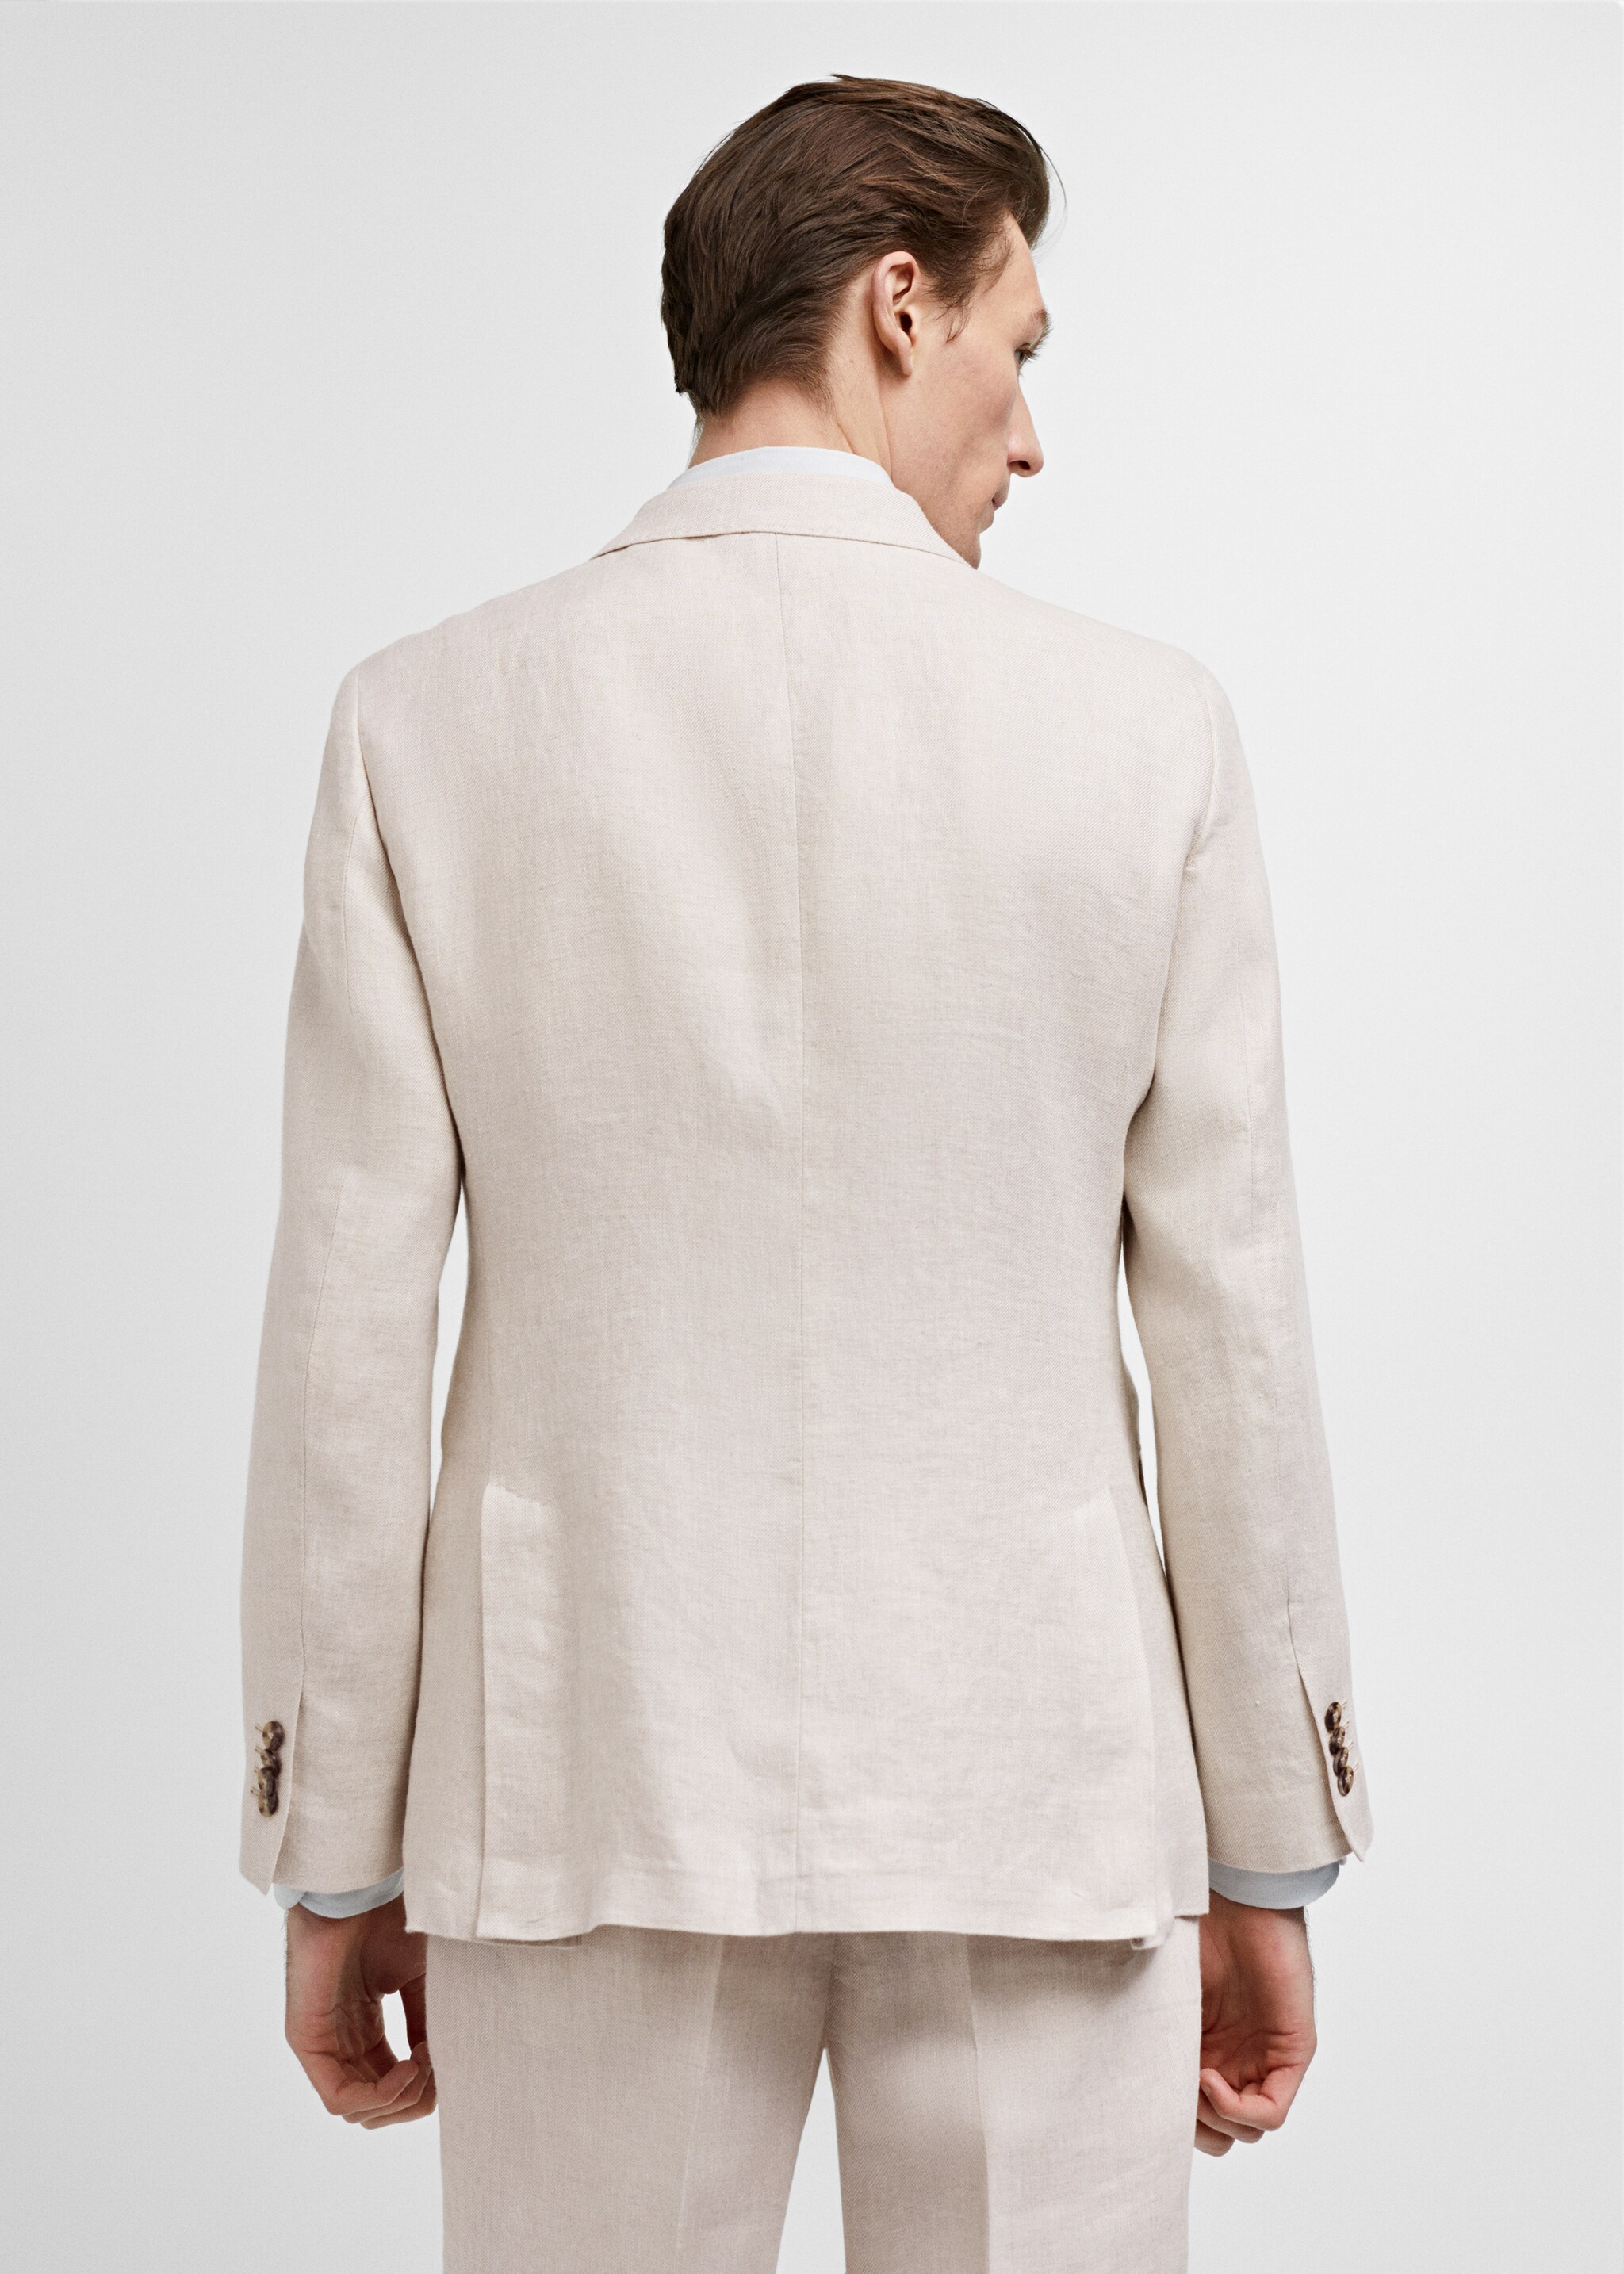 Костюмный пиджак slim fit 100% лен - Обратная сторона изделия